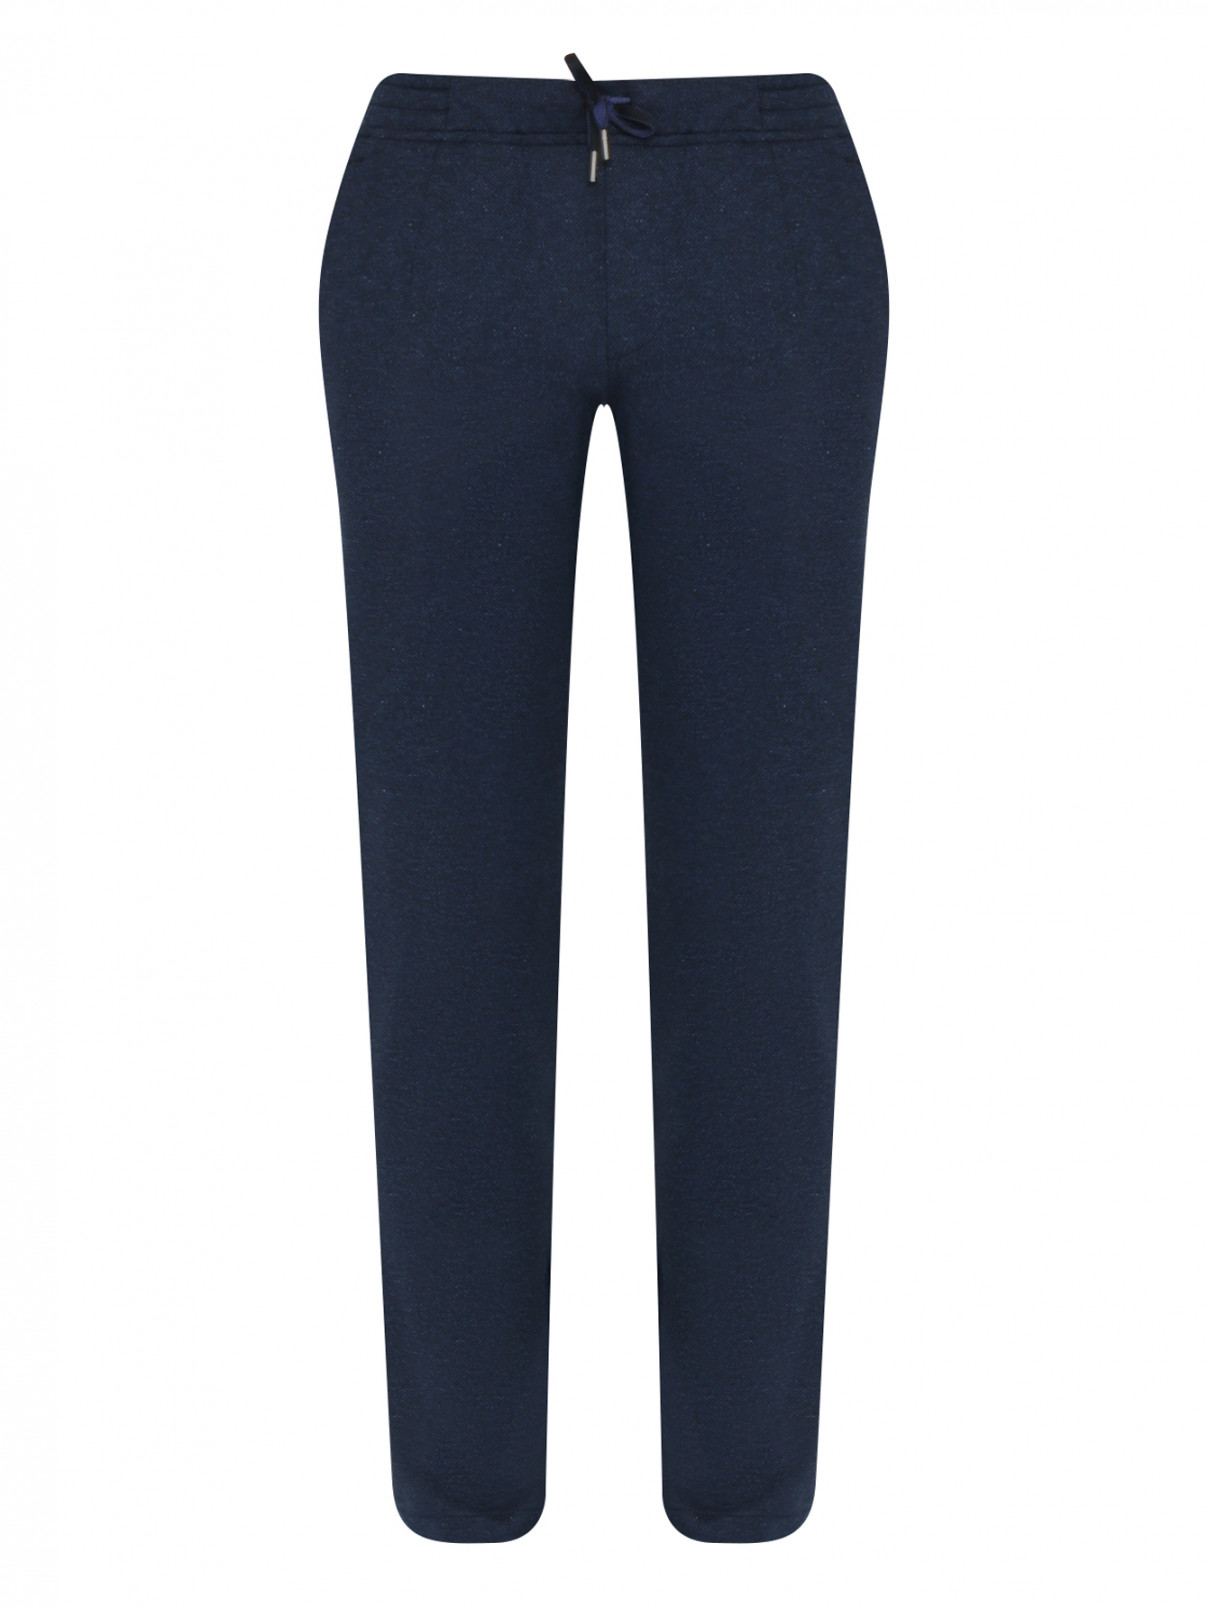 Трикотажные брюки из хлопка на резинке Capobianco  –  Общий вид  – Цвет:  Синий